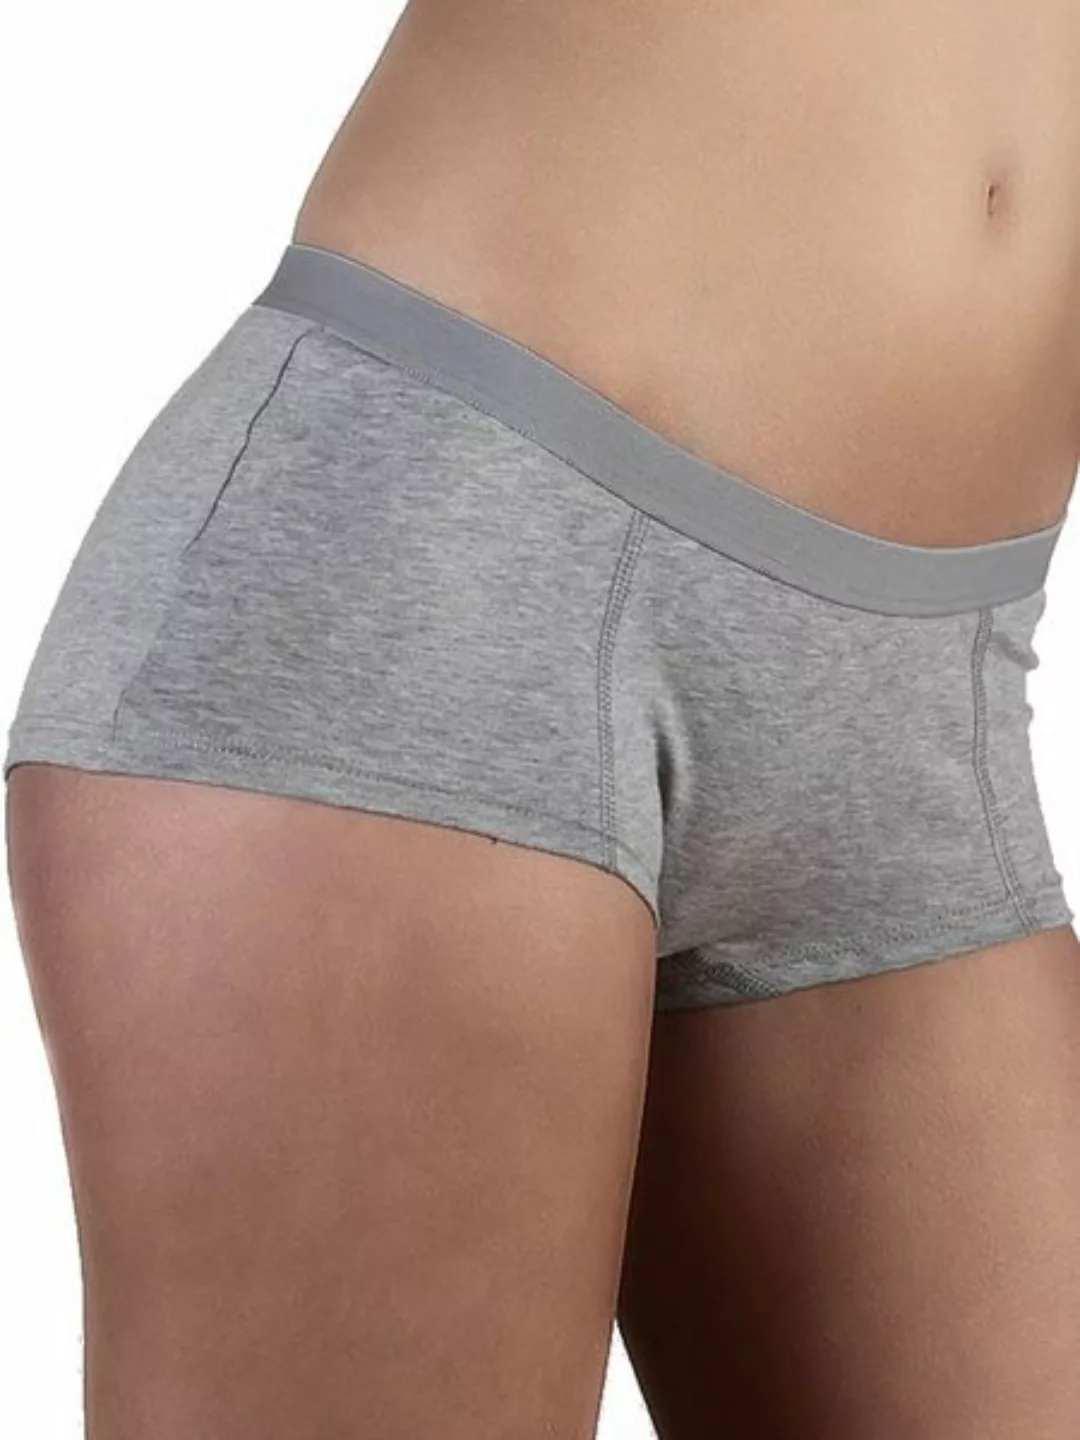 5 Er Pack Damen Boyshort Bio-baumwolle 6 Farben Slip Panty Unterhose günstig online kaufen